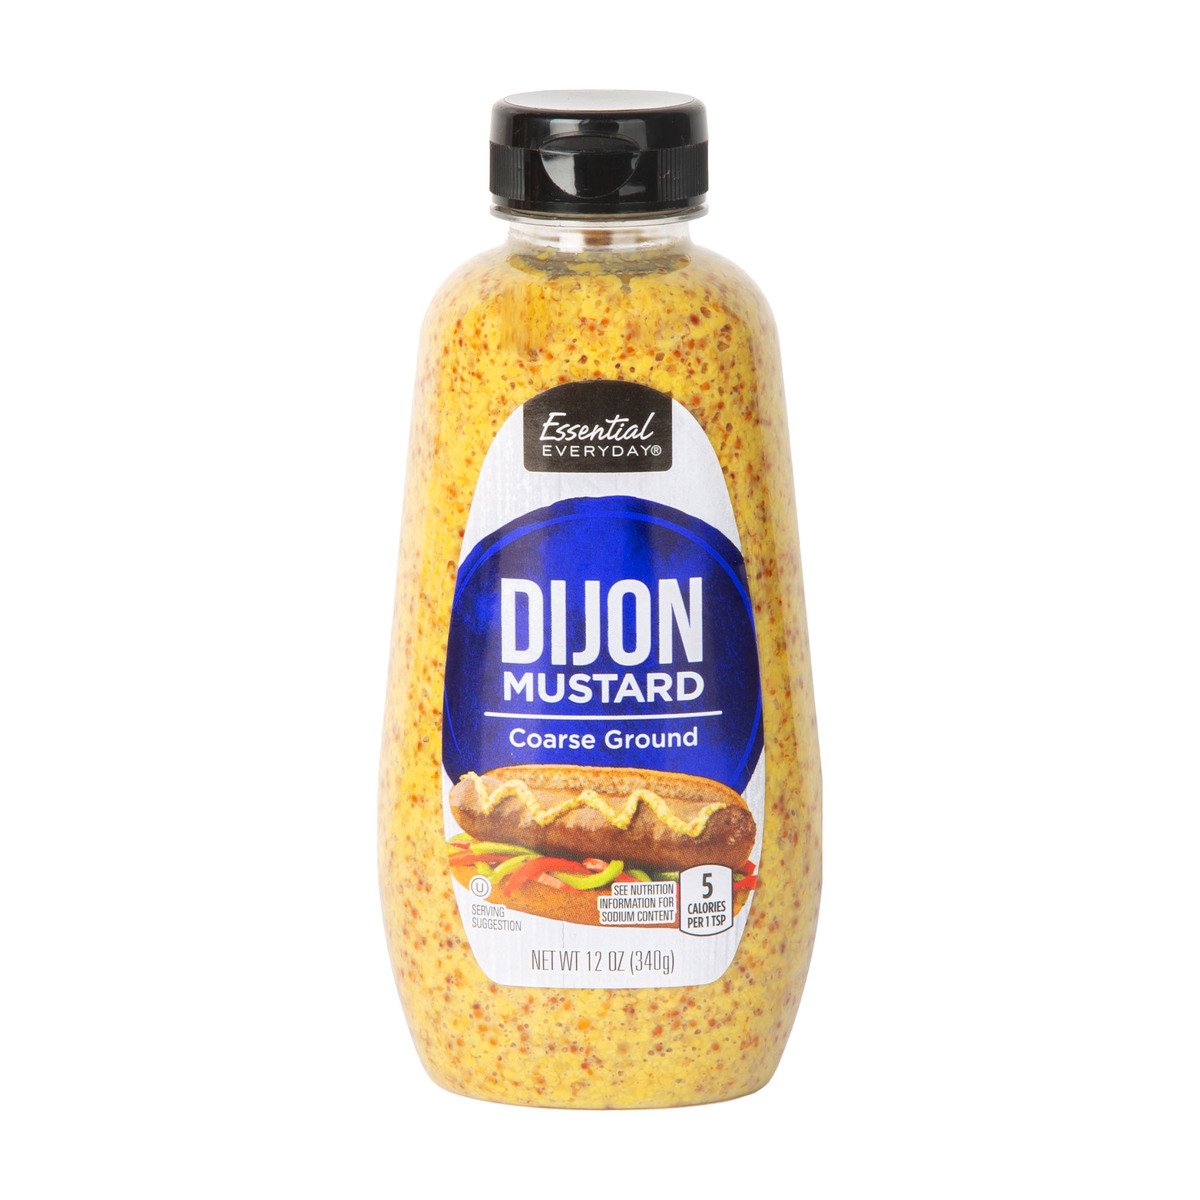 Essential Everyday Coarse Ground Dijon Mustard 340 g